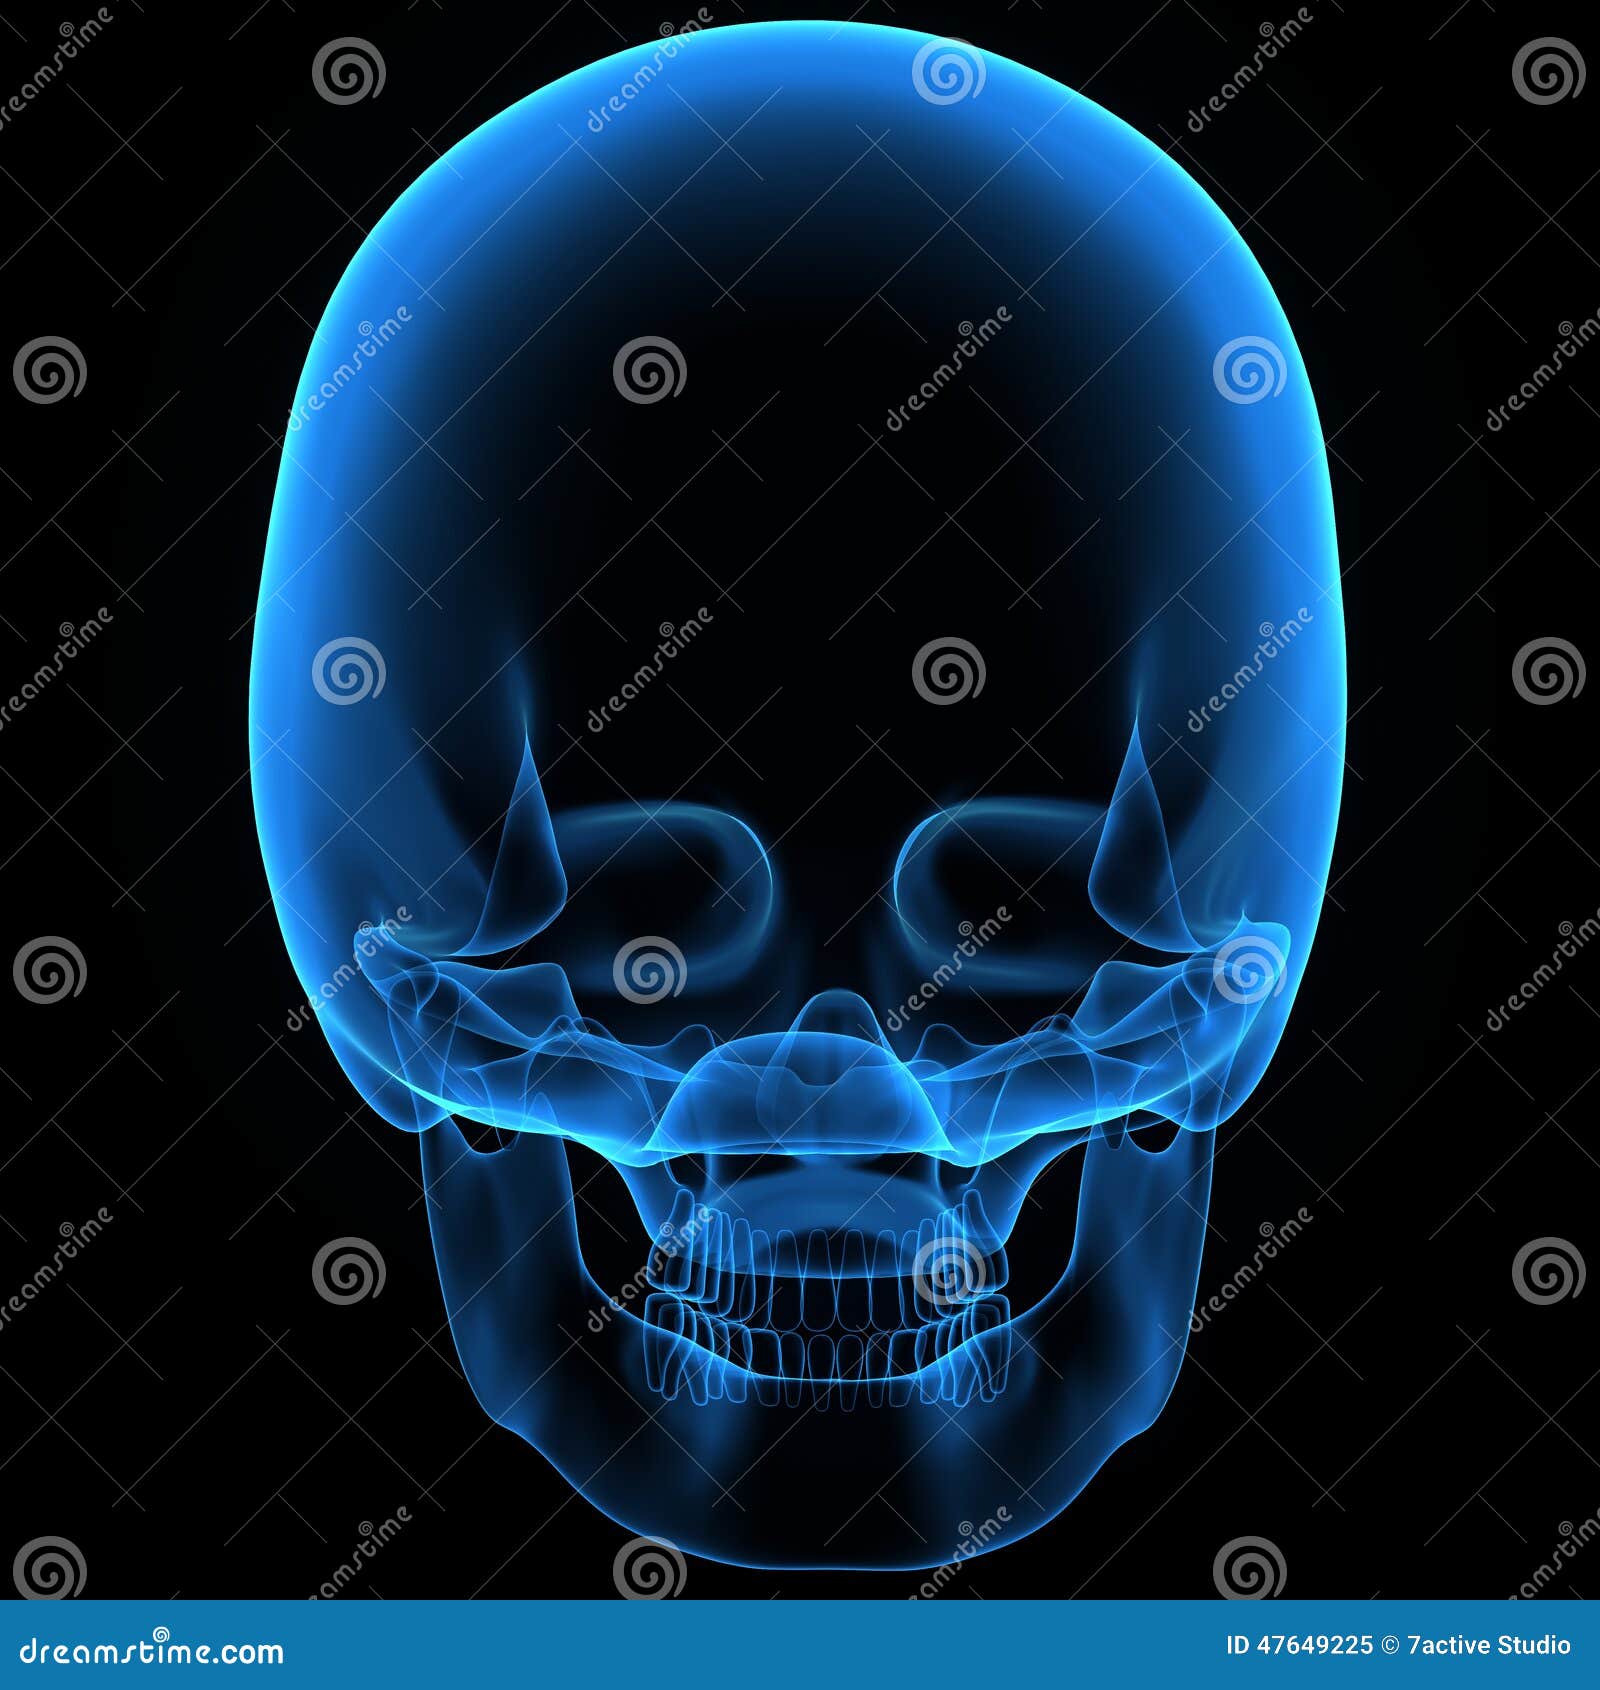 Skull stock illustration. Image of ethmoid, bone, physiology - 47649225